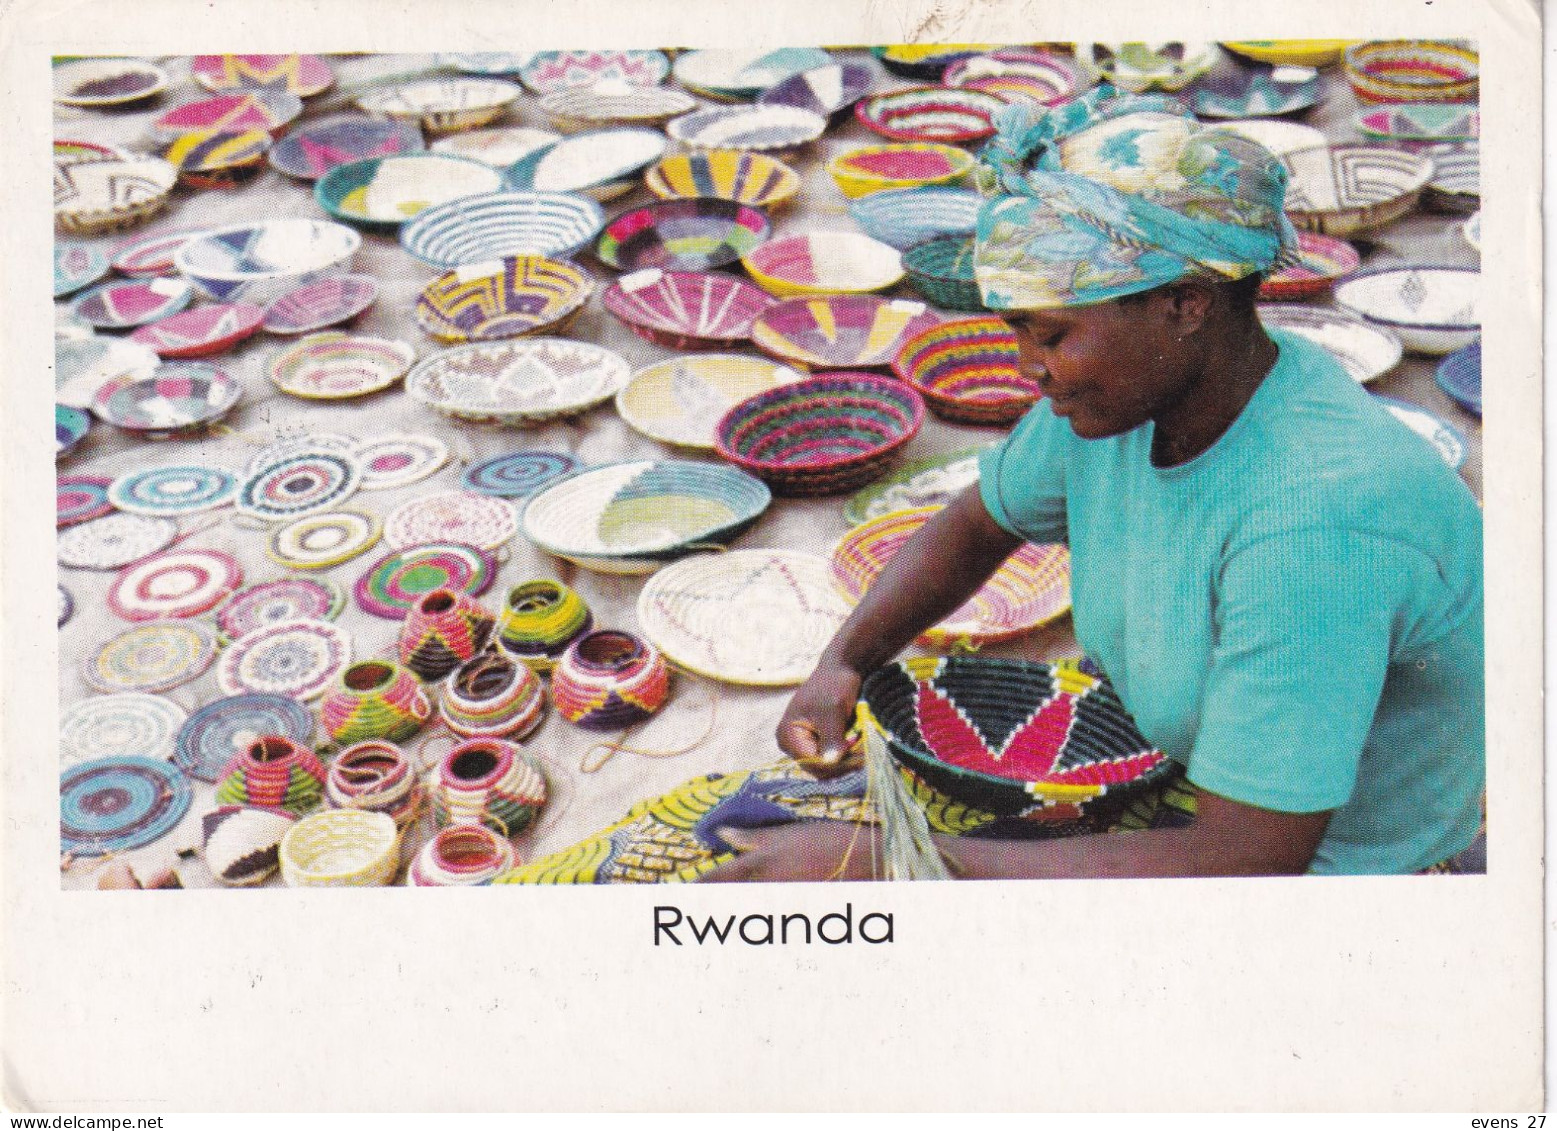 RWANDA-RED ROCKS-USED POSTCARD --RWANDA POSTMARK- - Ruanda